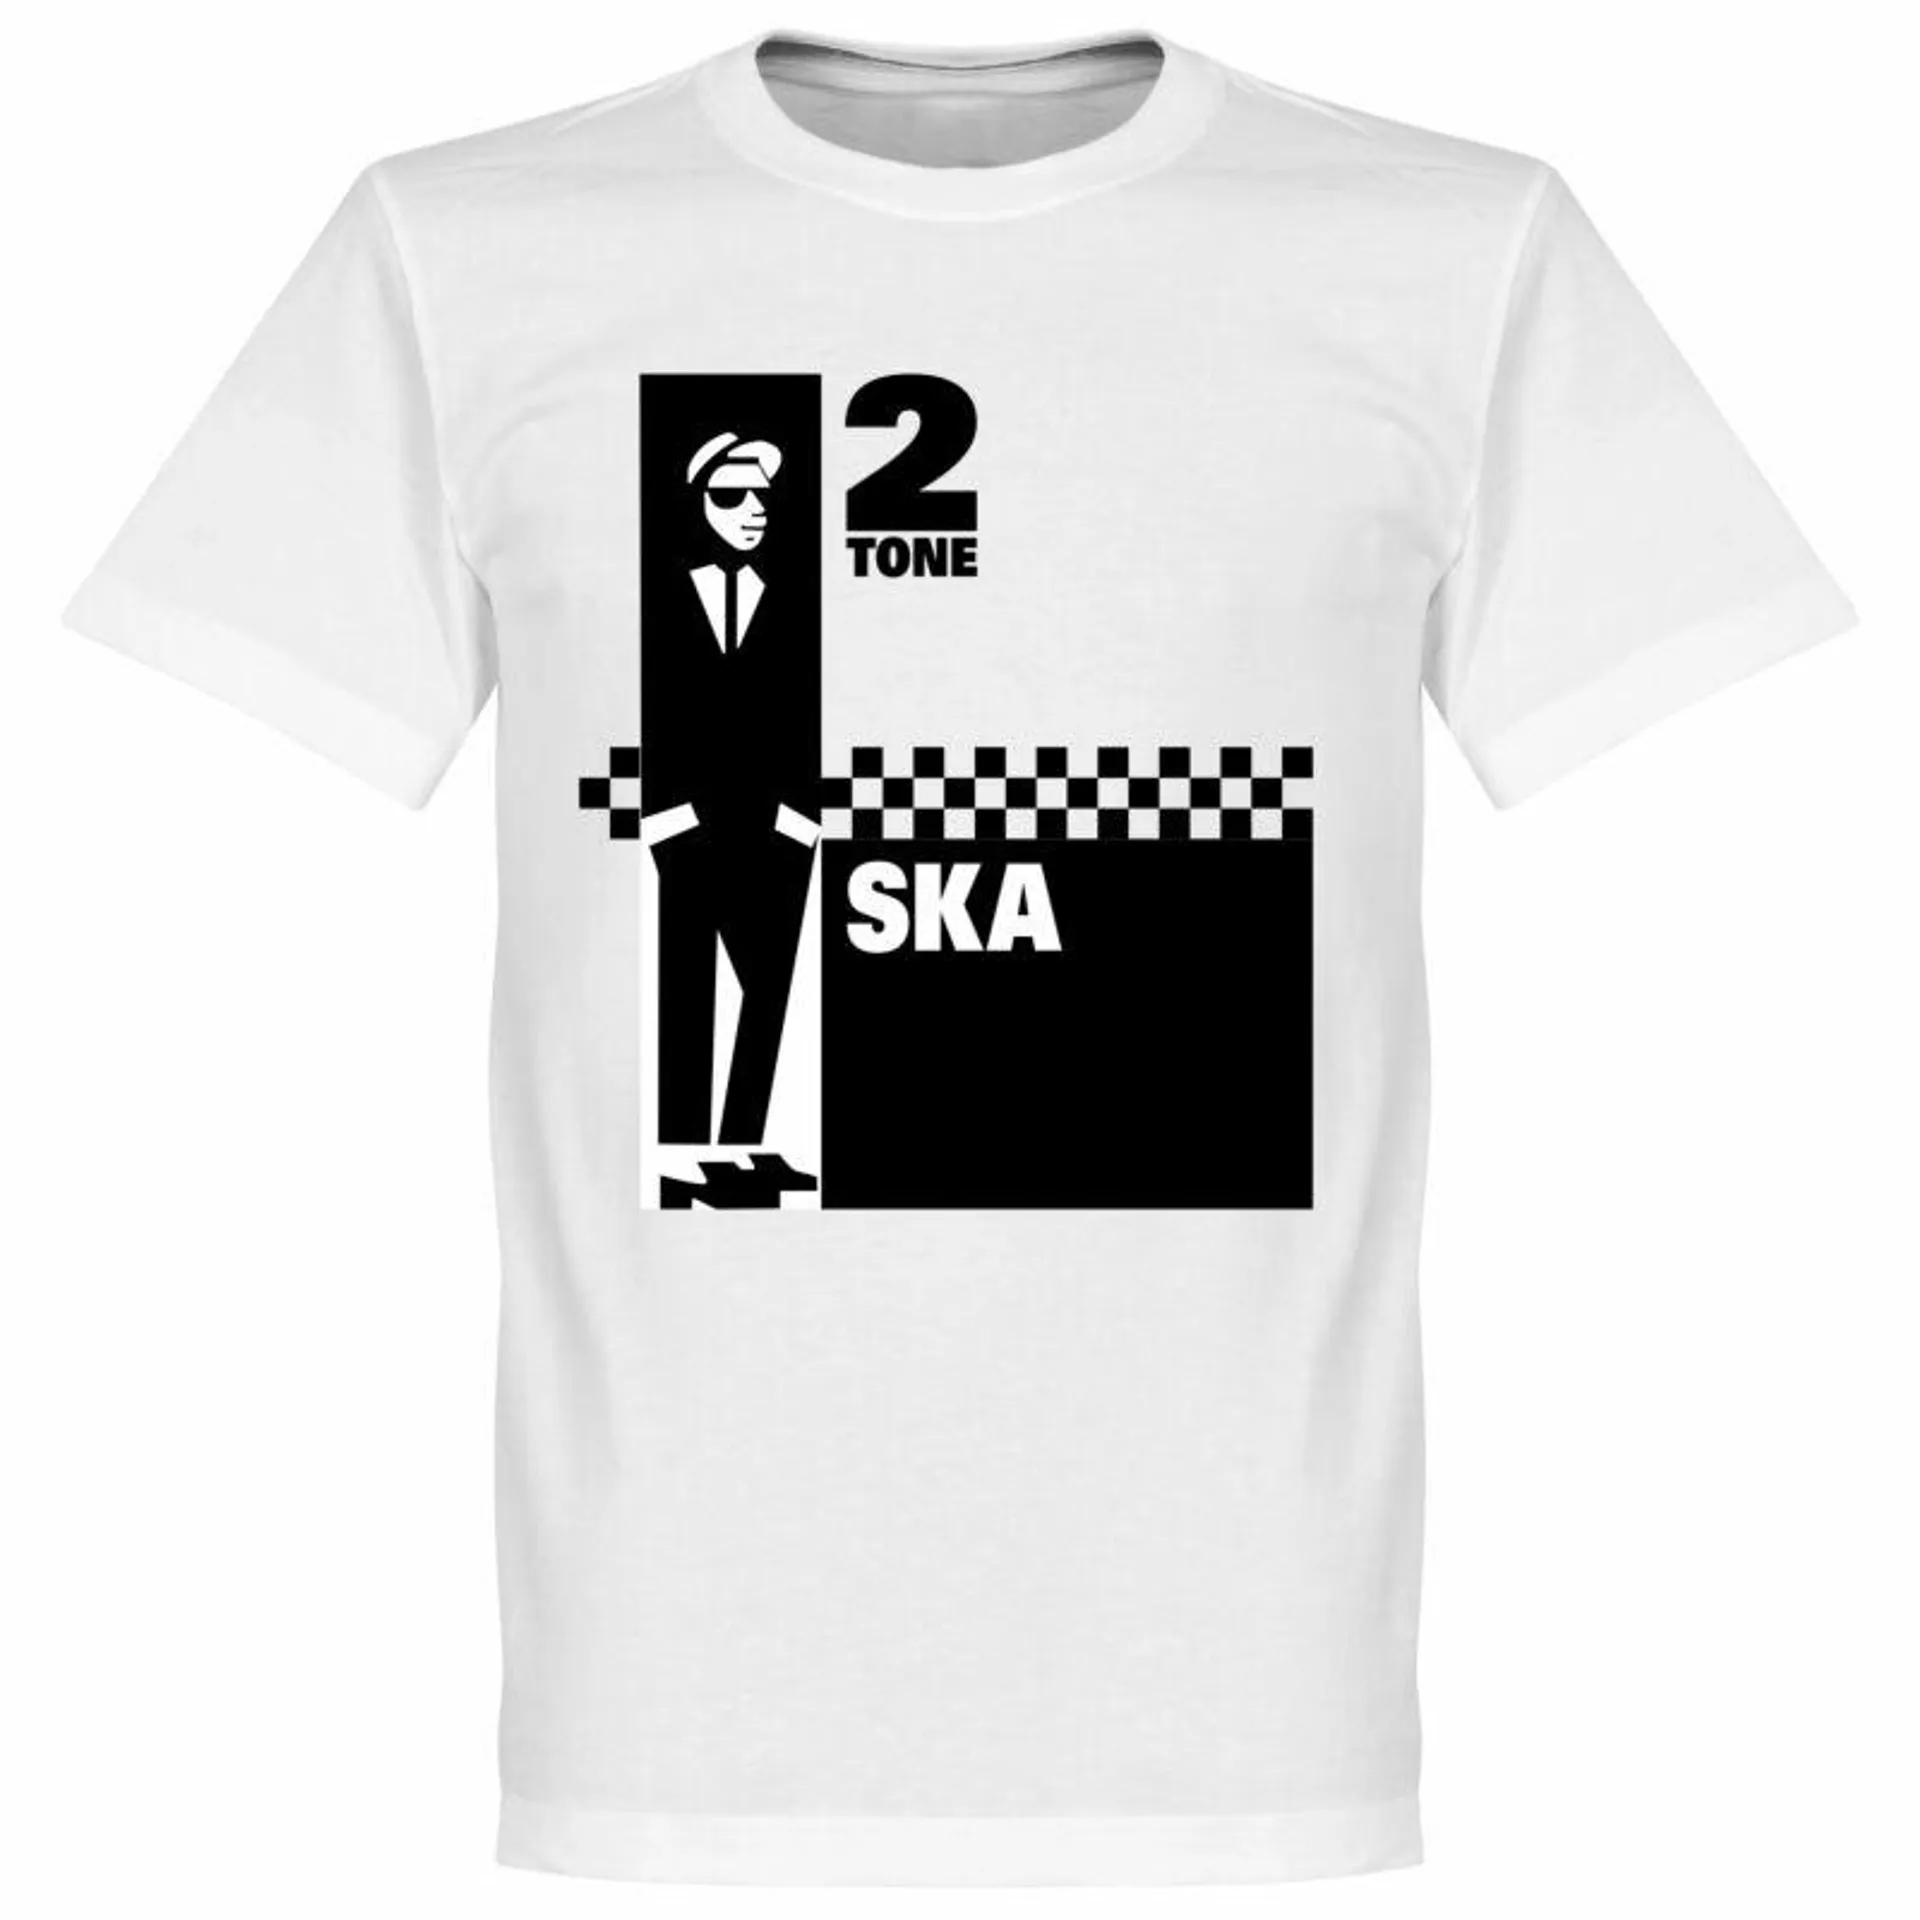 2 Tone Ska T-Shirt - White